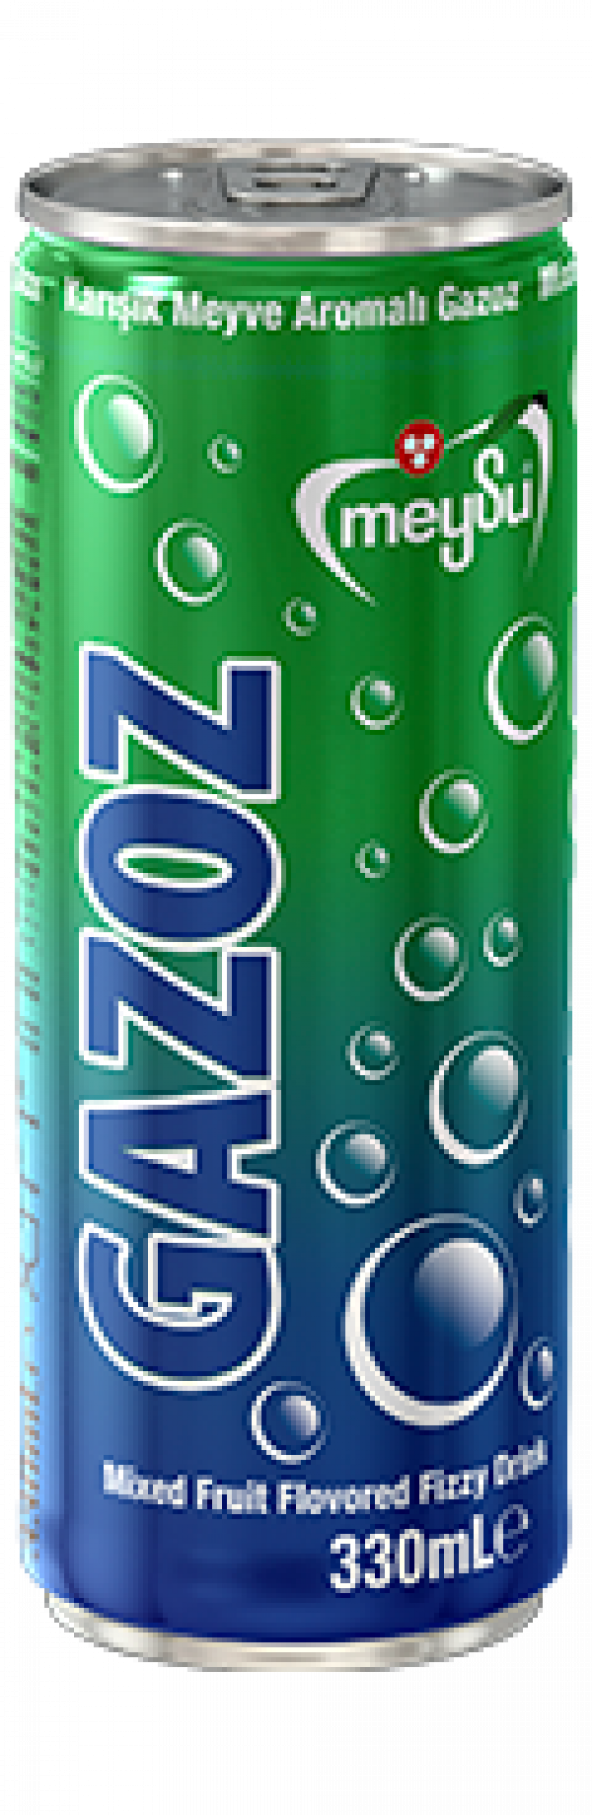 MEYSU GAZOZ 330 ml  x 24 (Karışık Meyve Aromalı Gazoz)